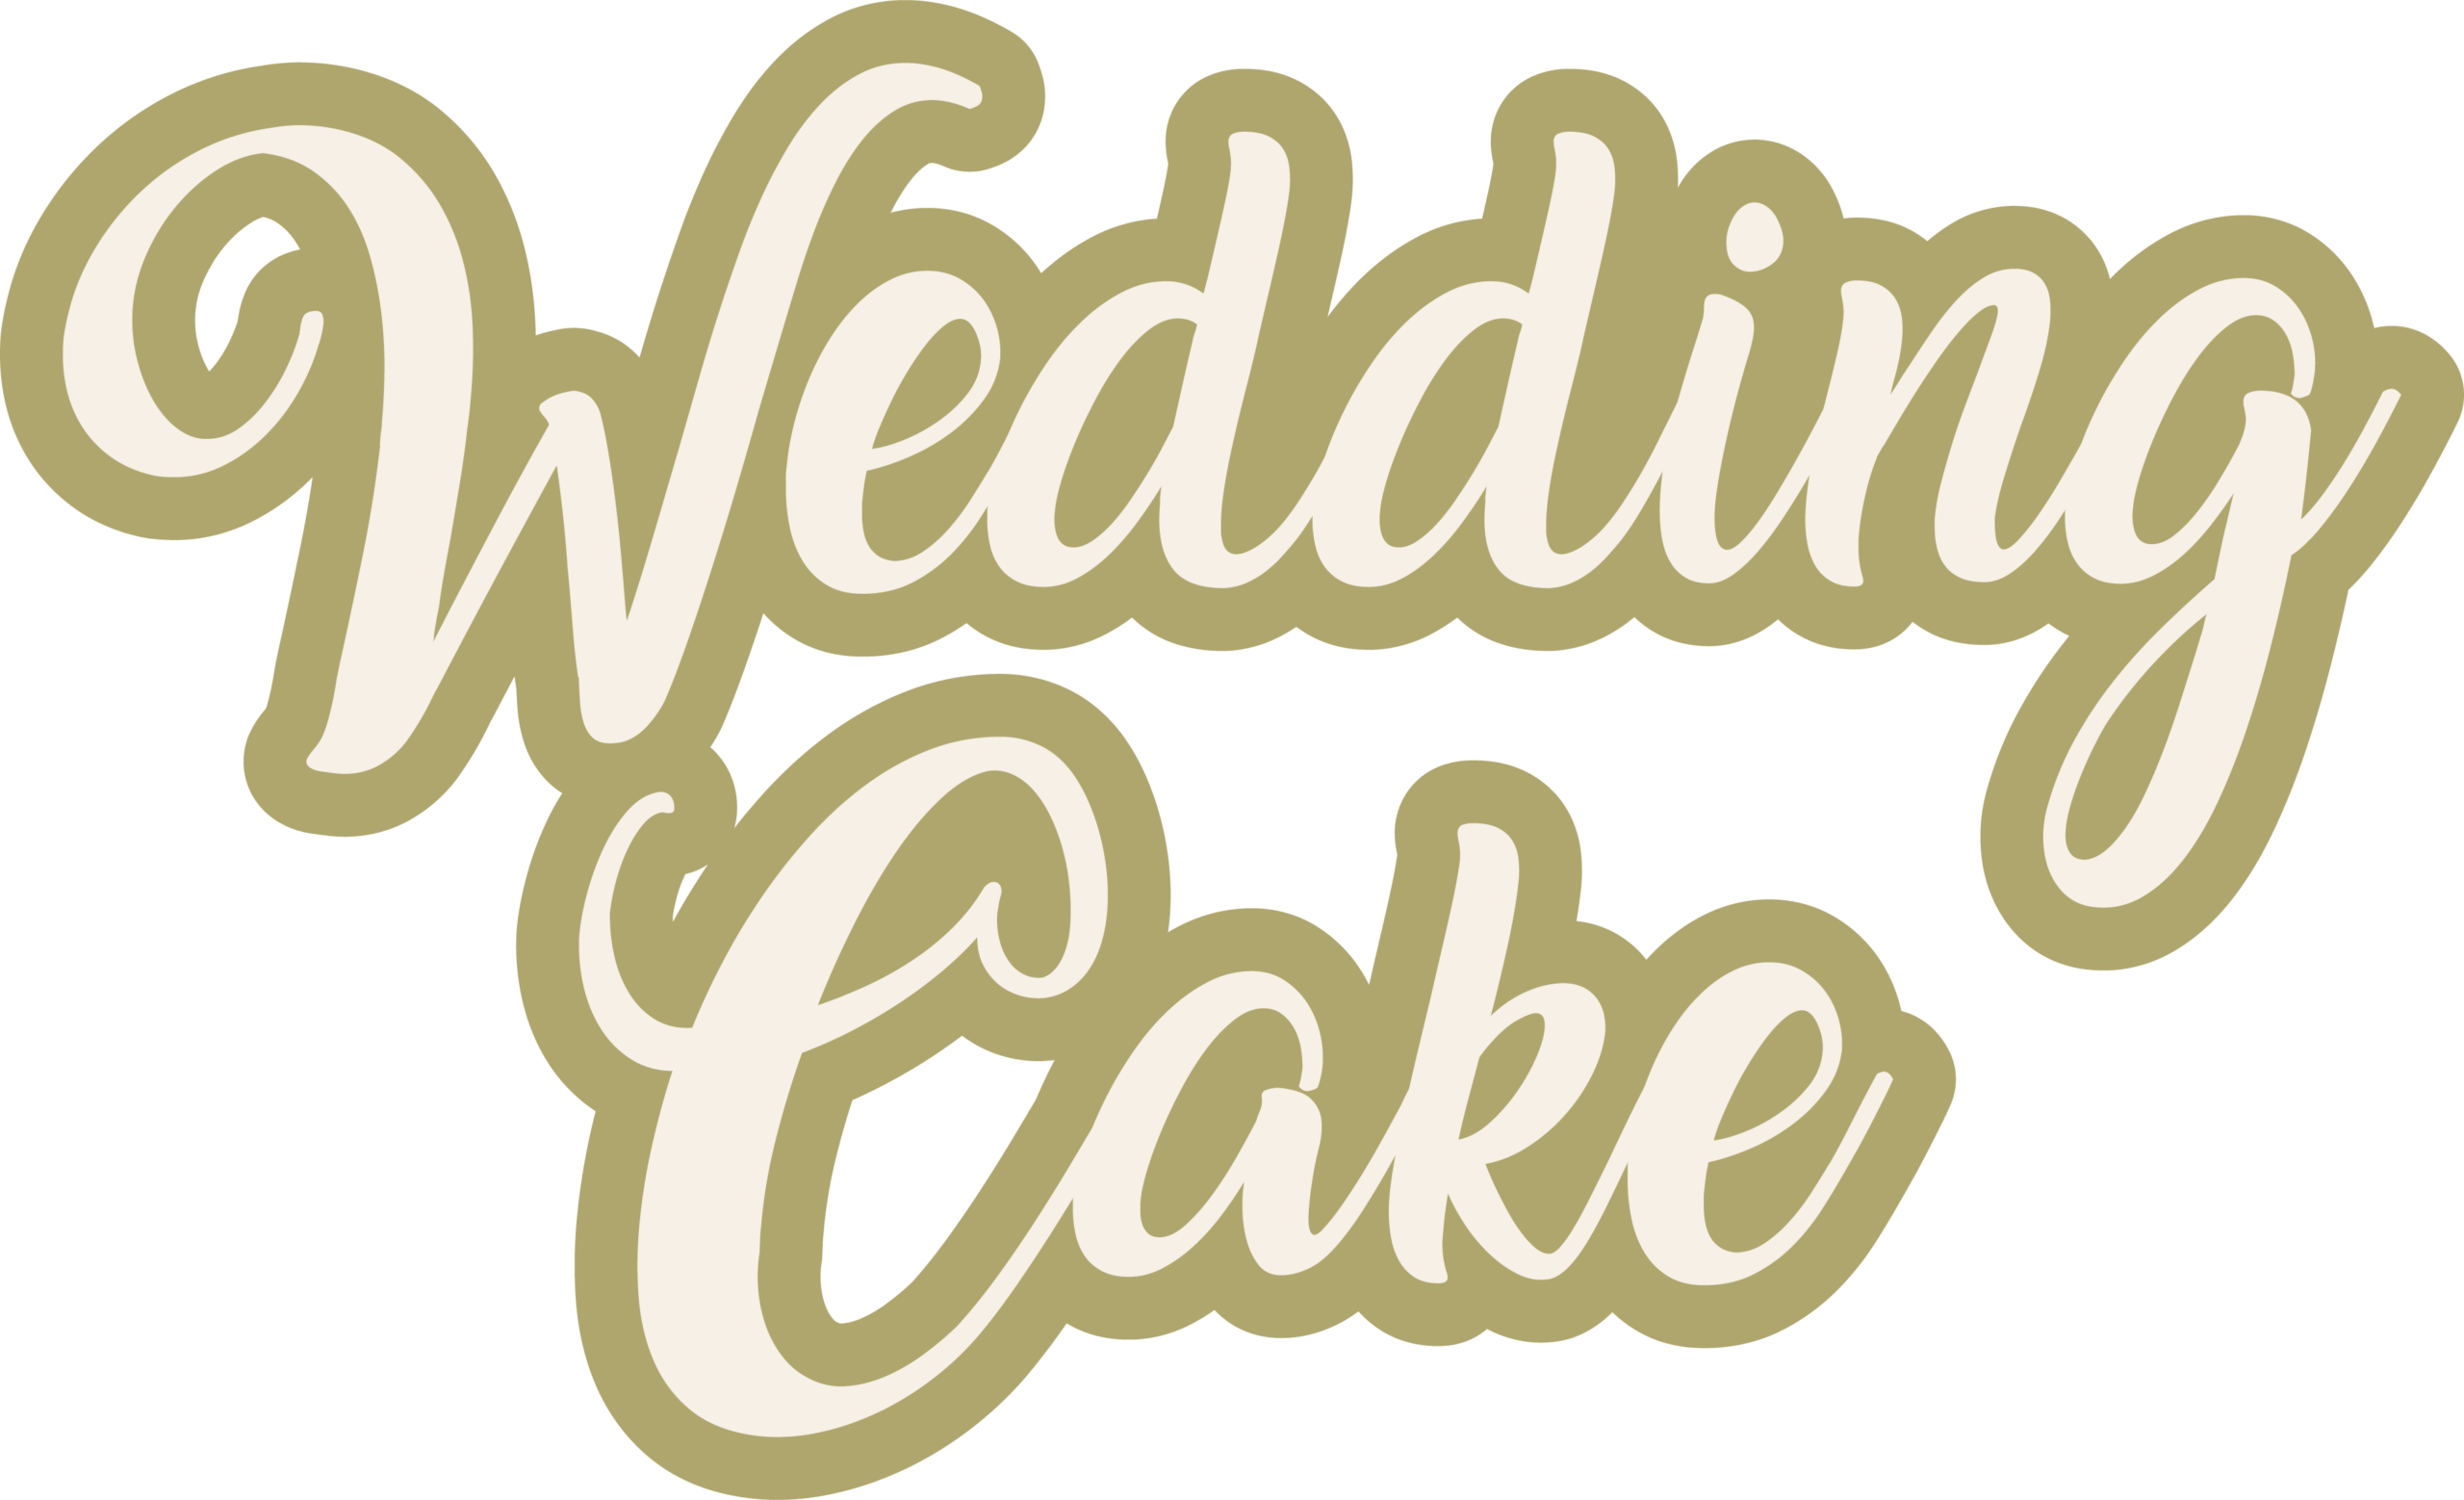 WEDDING CAKES Icon Image